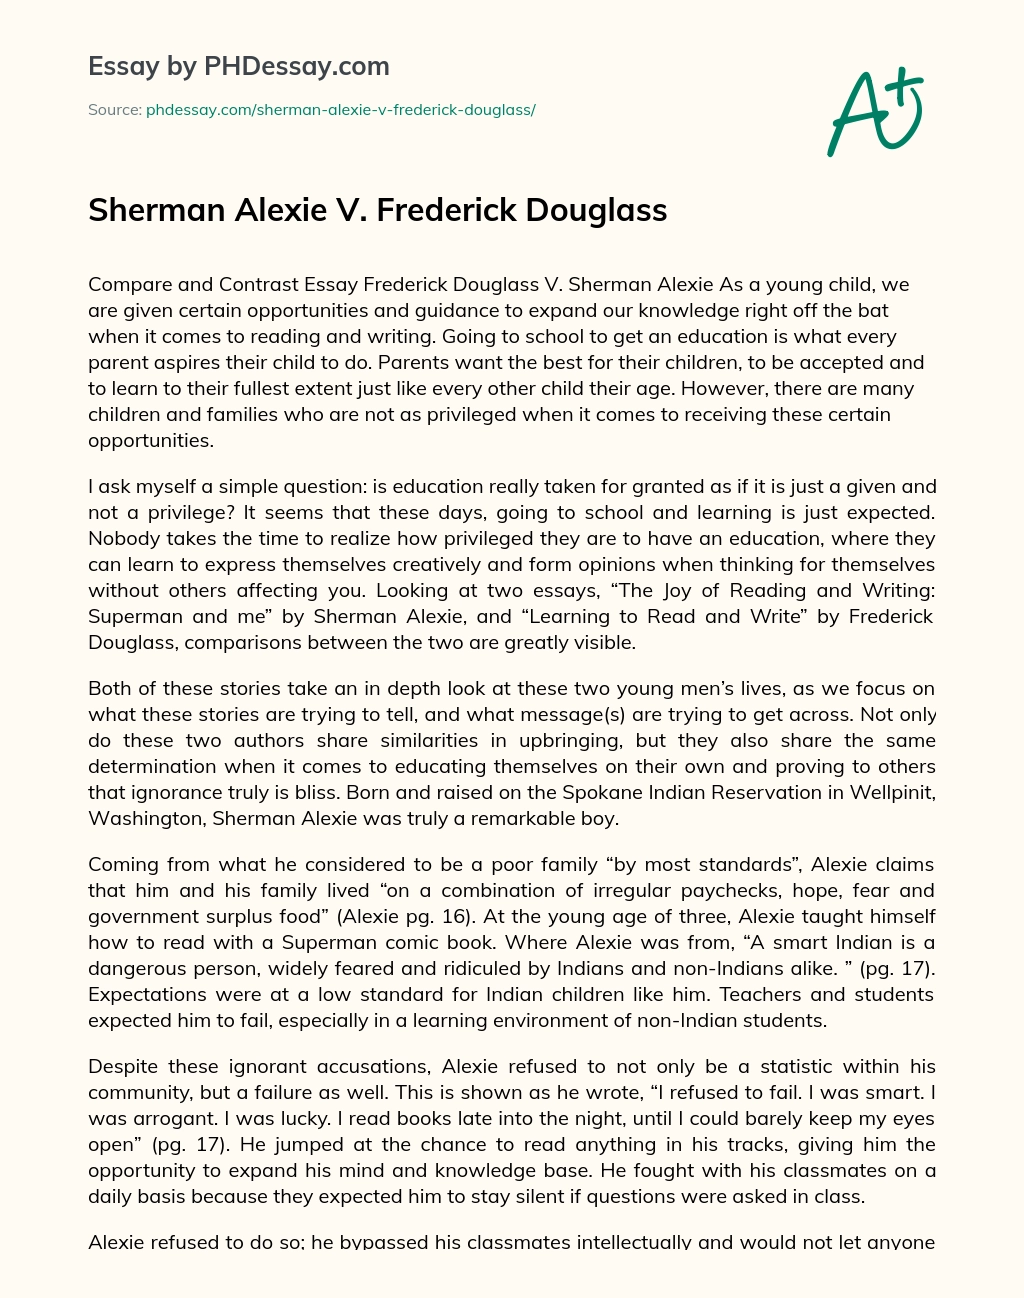 Sherman Alexie V. Frederick Douglass essay